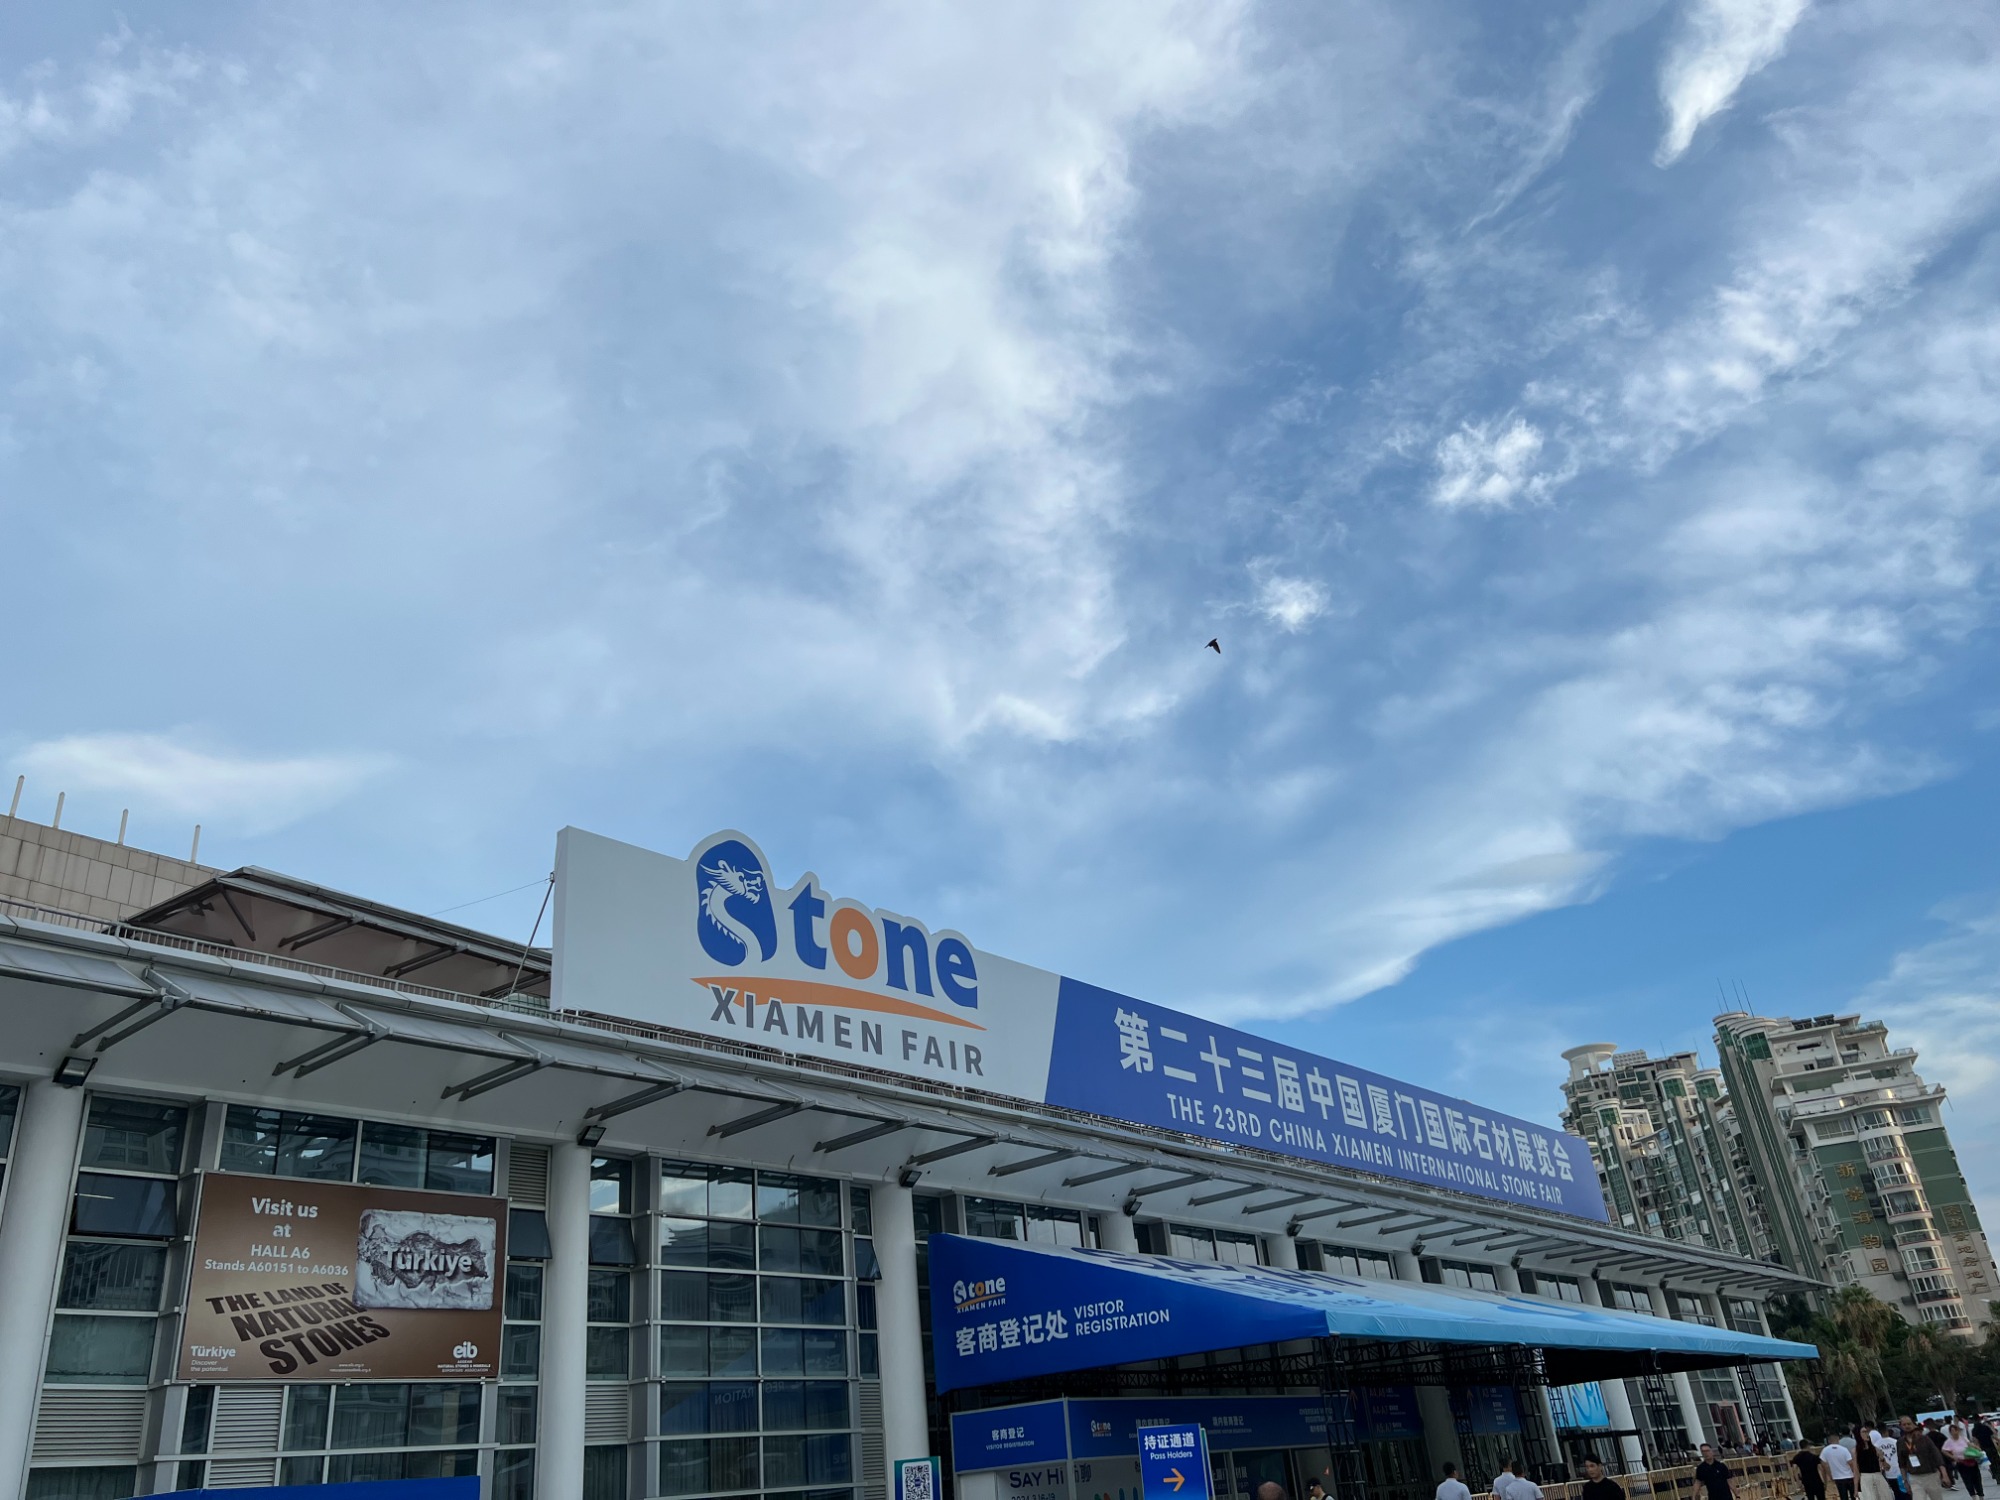 The 23rd China Xiamen Internation Stone Fair